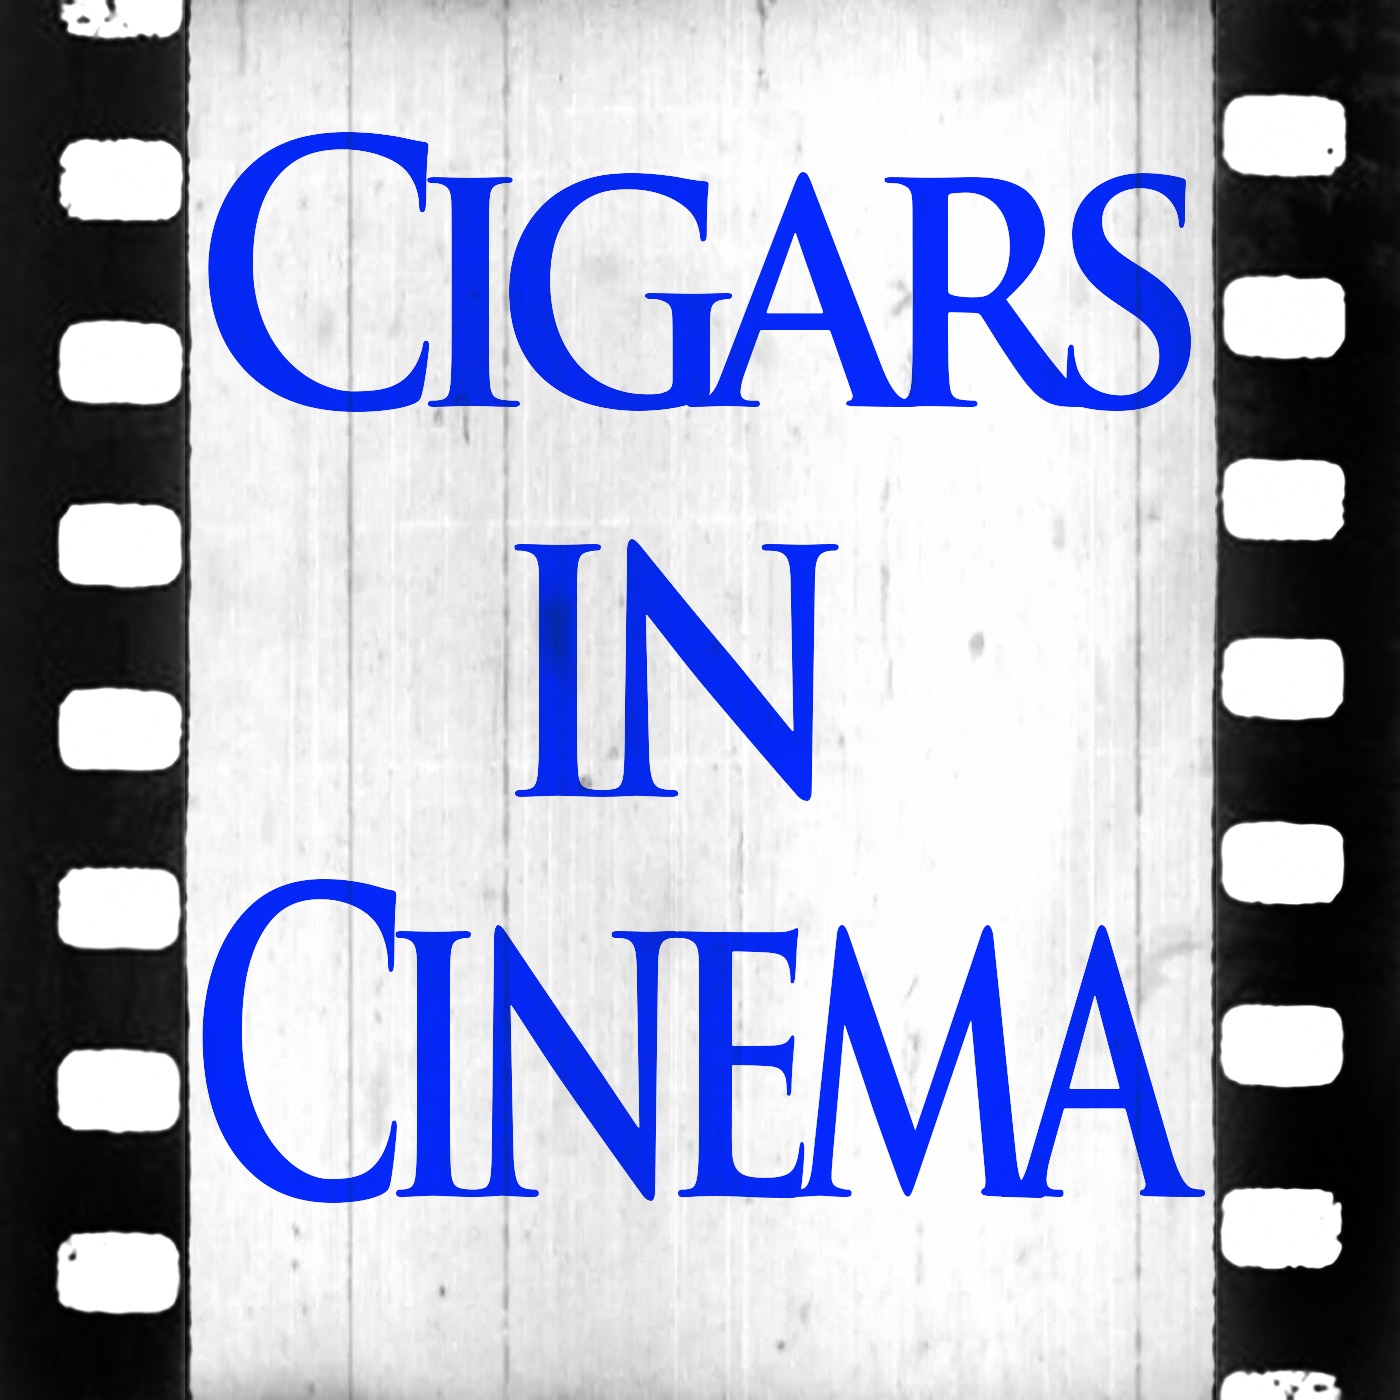 Cigars AND Cinema